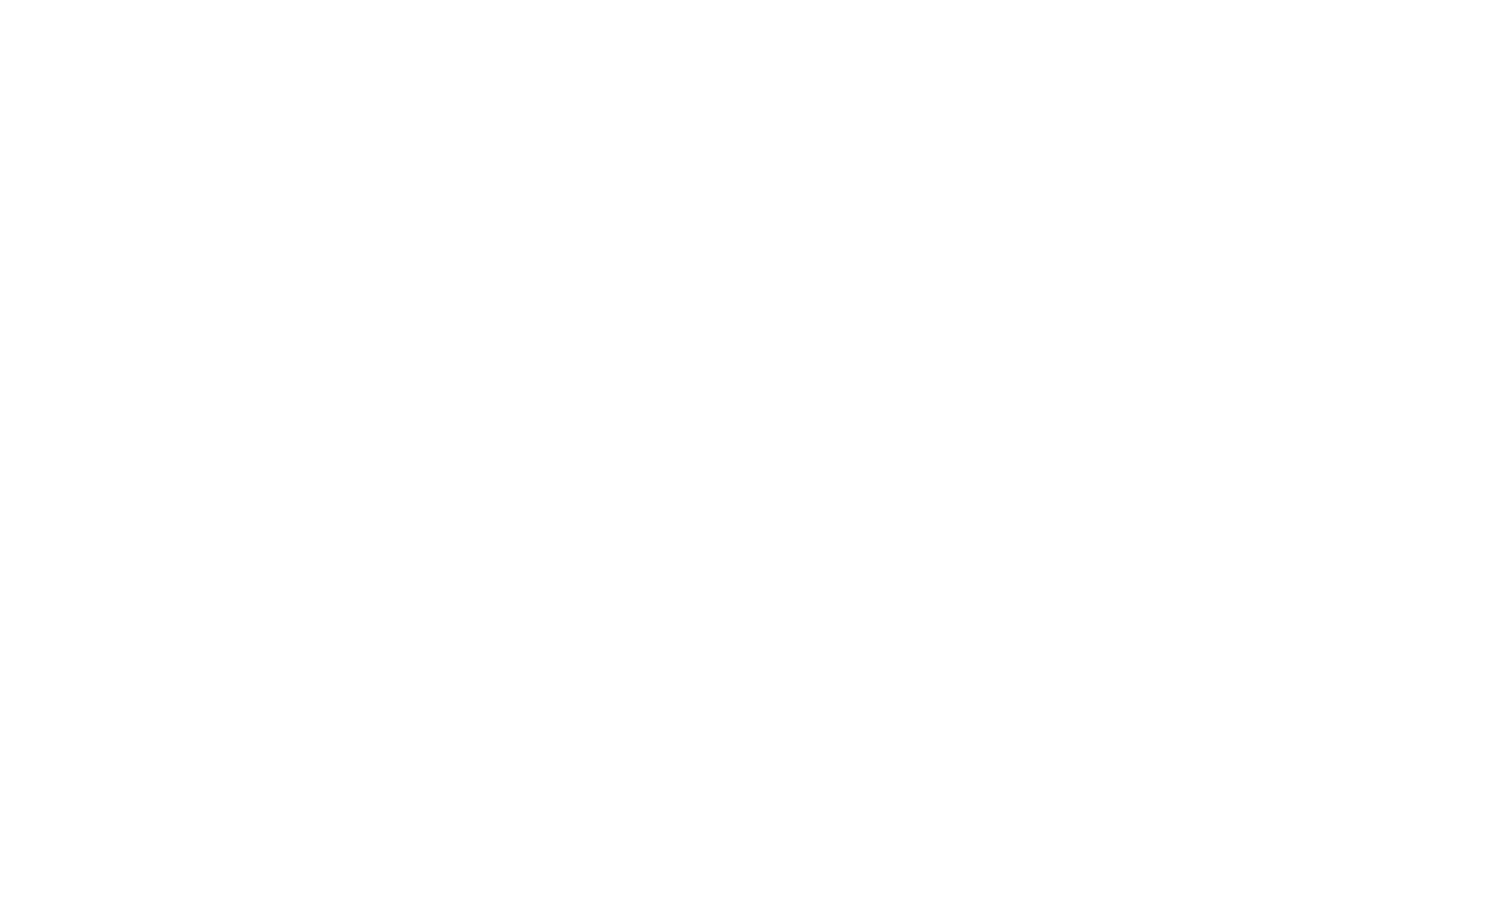 Carbon Neutral Plus